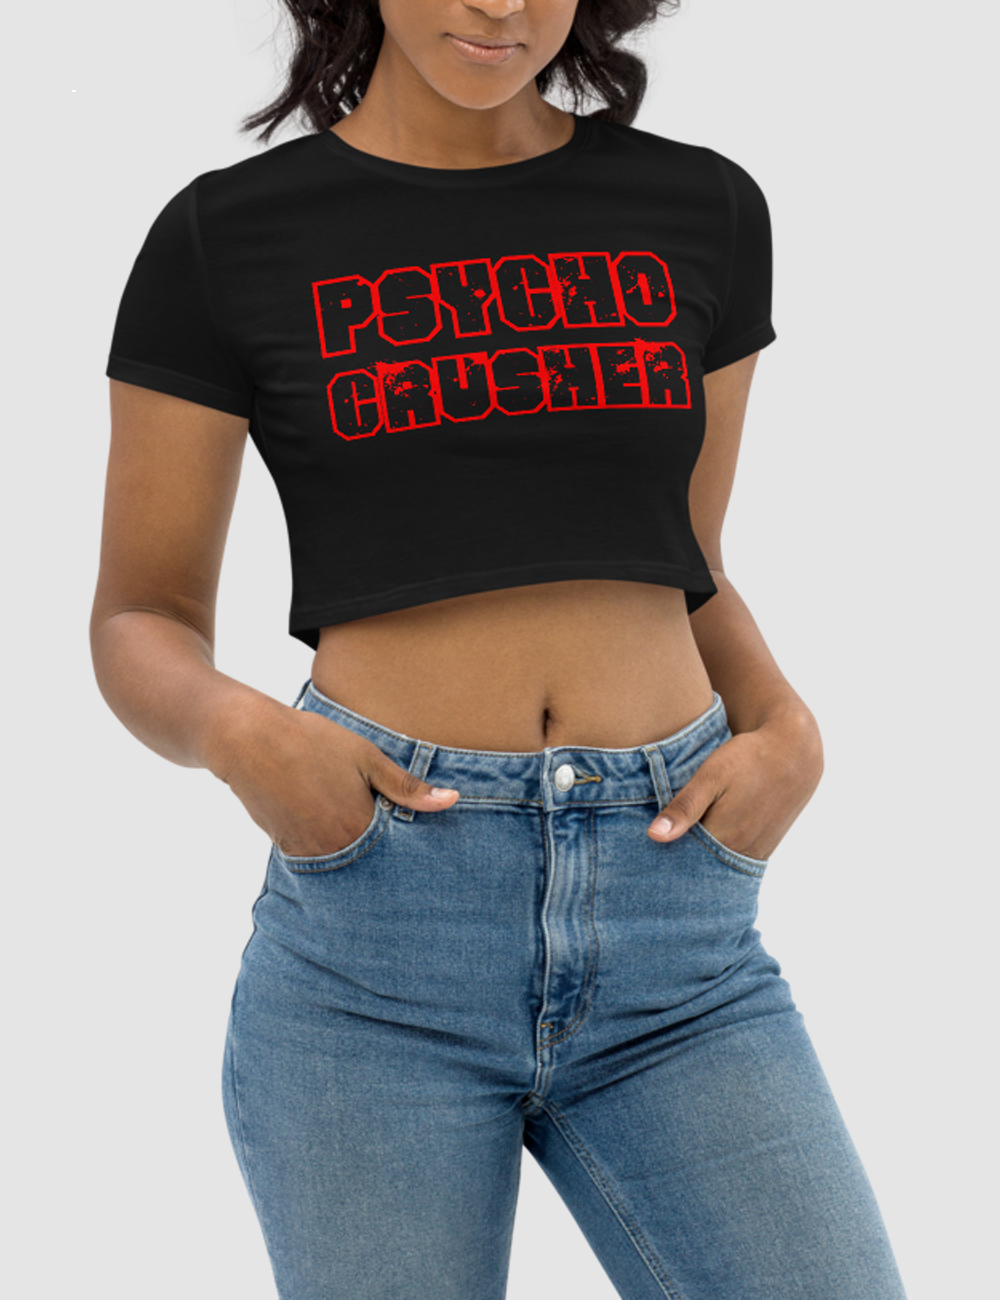 Psycho Crusher | Women's Crop Top T-Shirt OniTakai